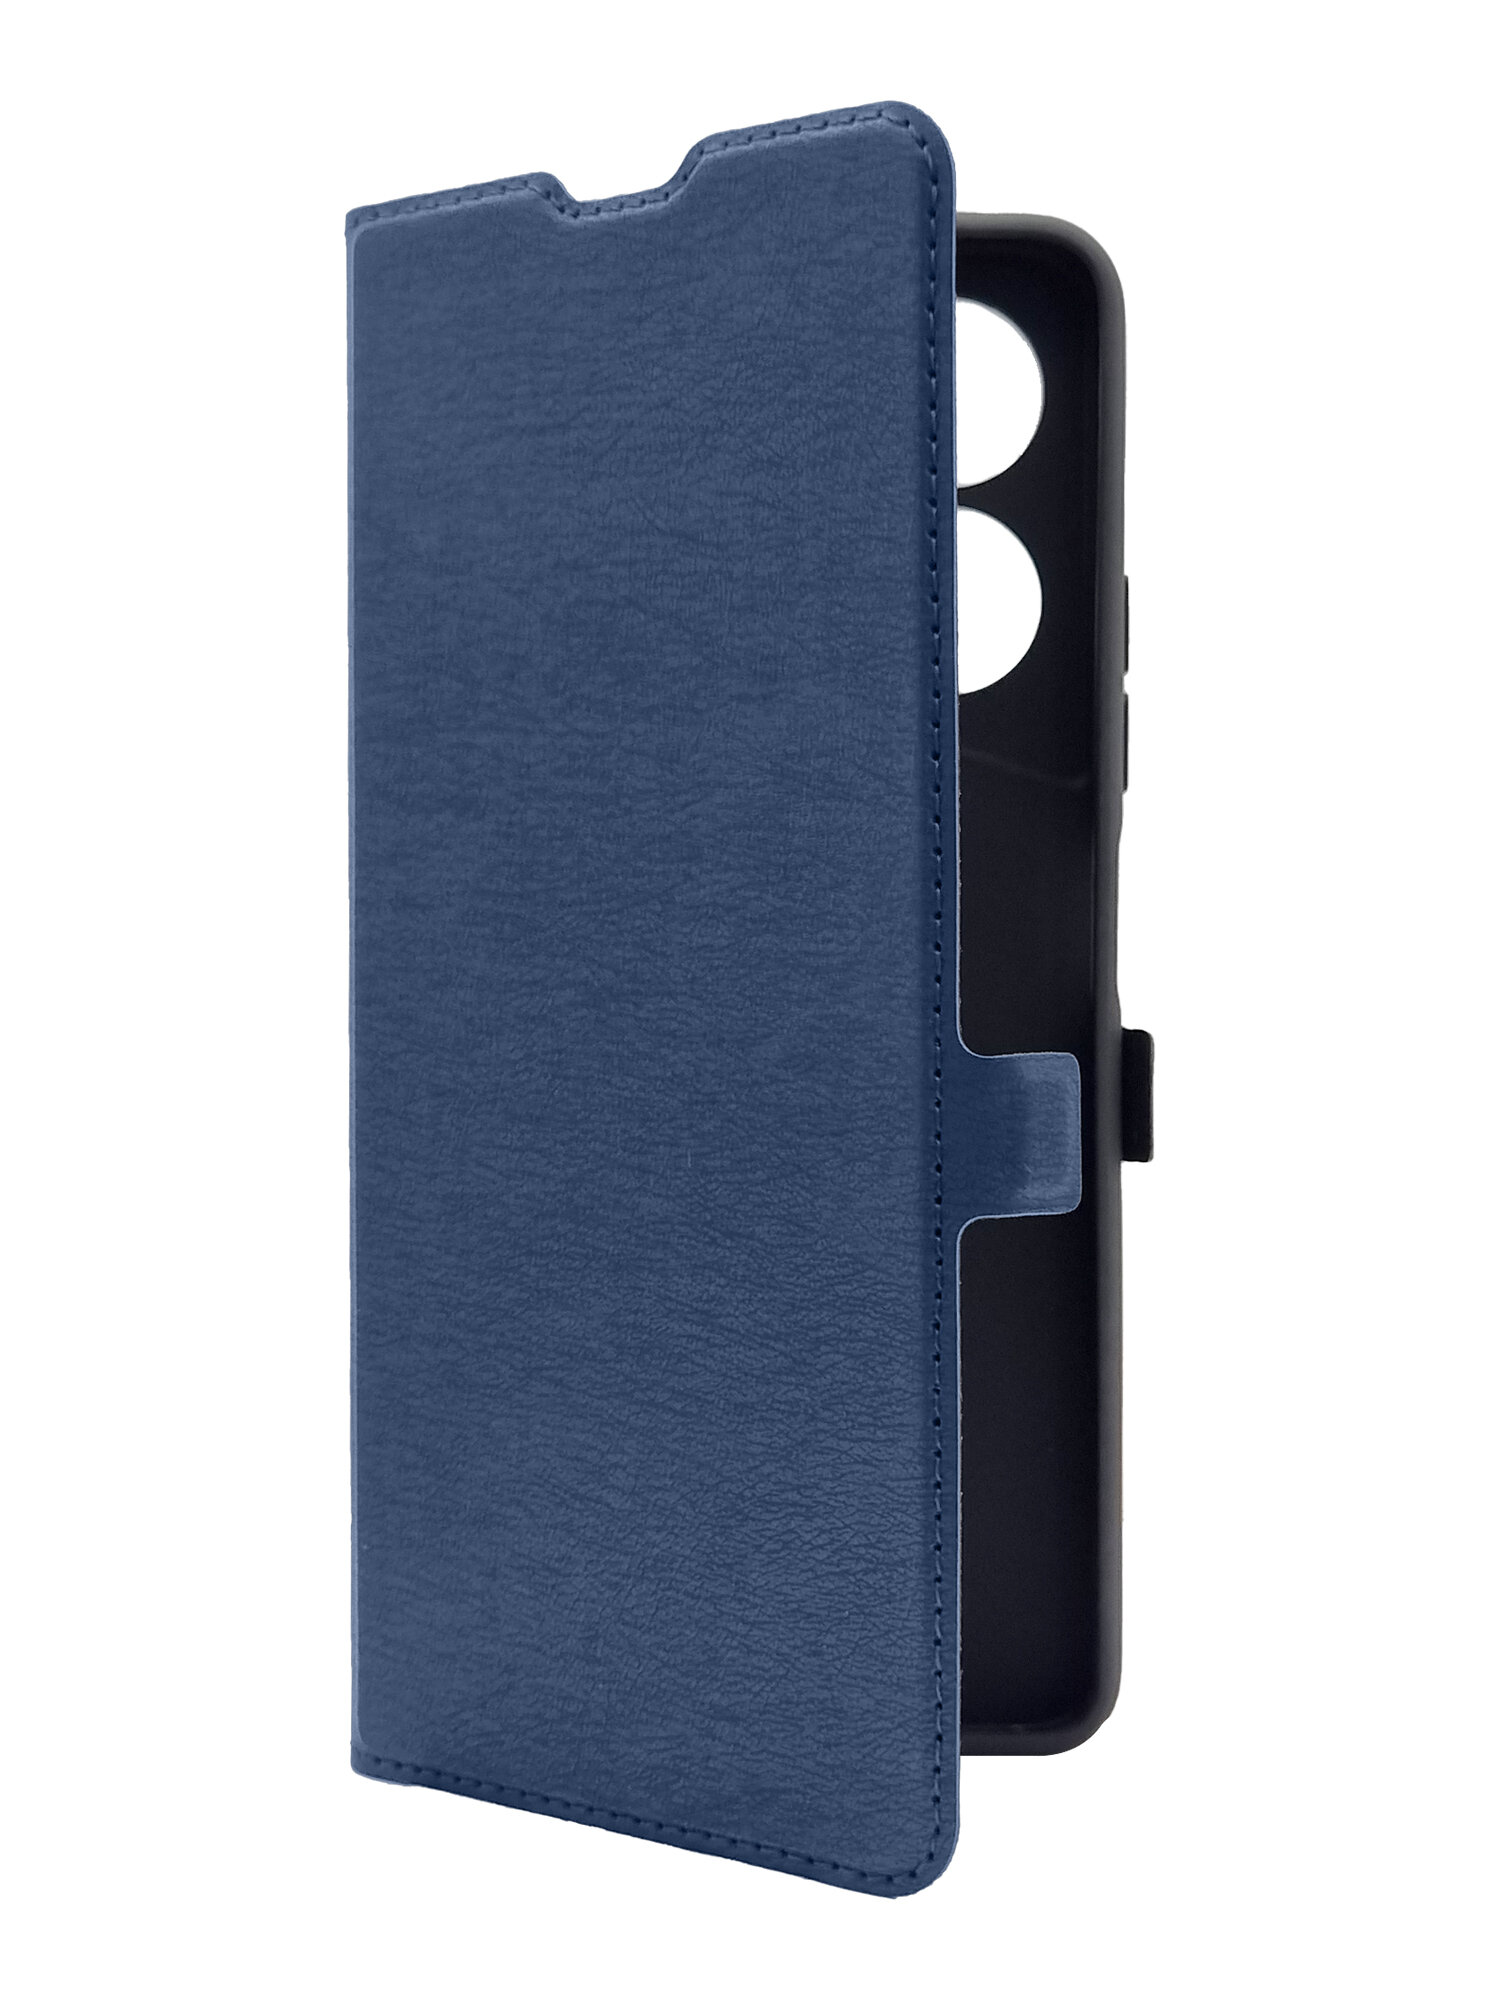 Чехол на Tecno Pova 5 (Техно Пова 5) синий книжка эко-кожа с функцией подставки отделением для пластиковых карт и магнитами Book case, Brozo